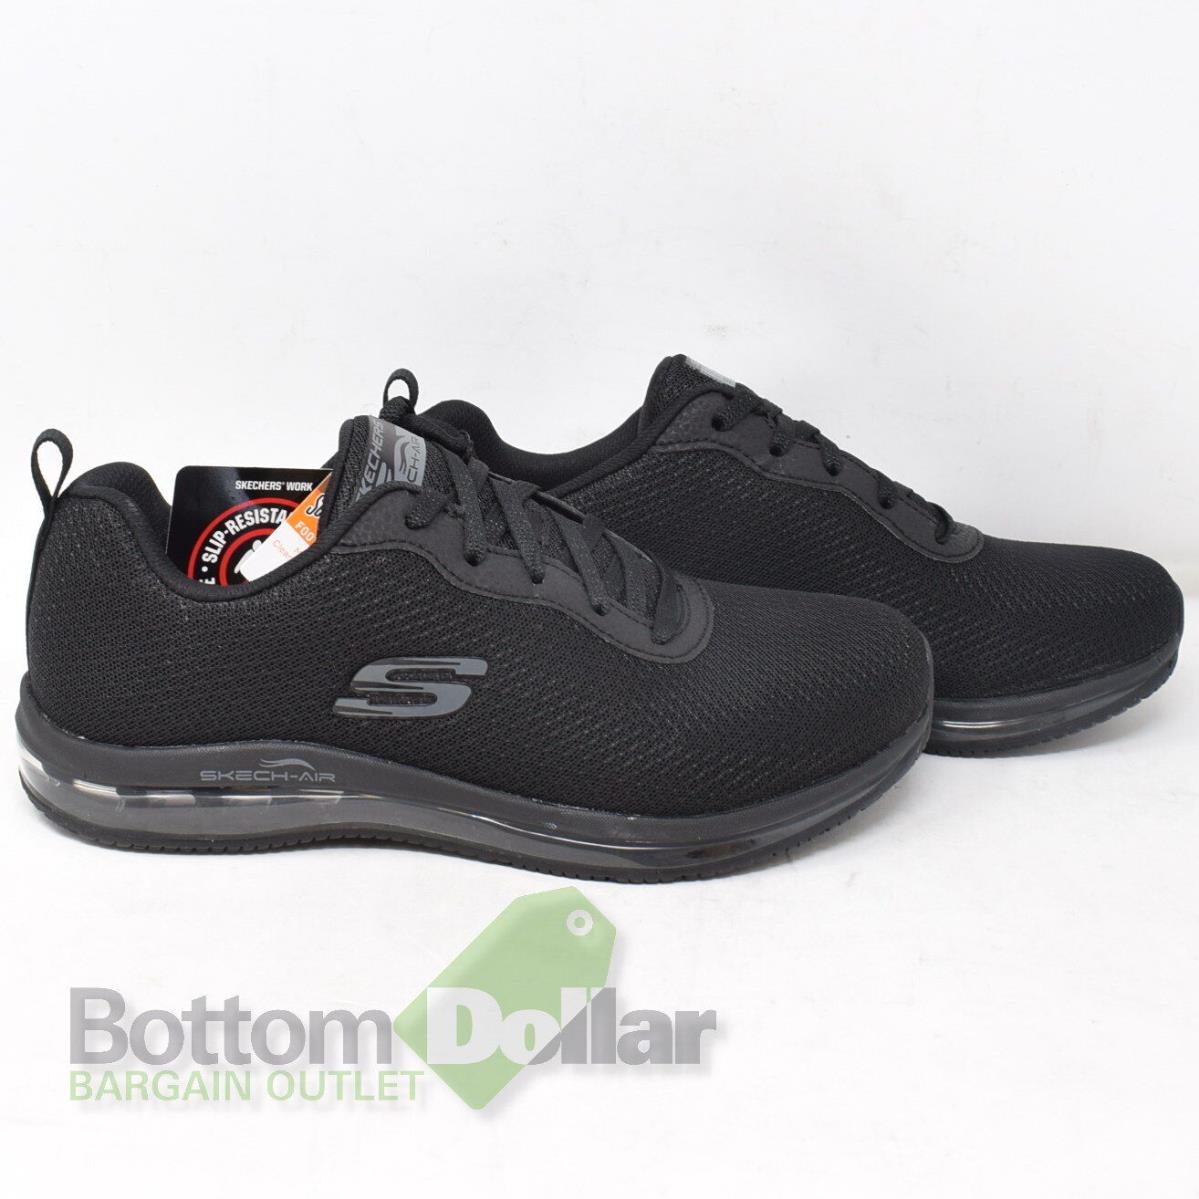 Skechers shoes Skech Air - Black 0